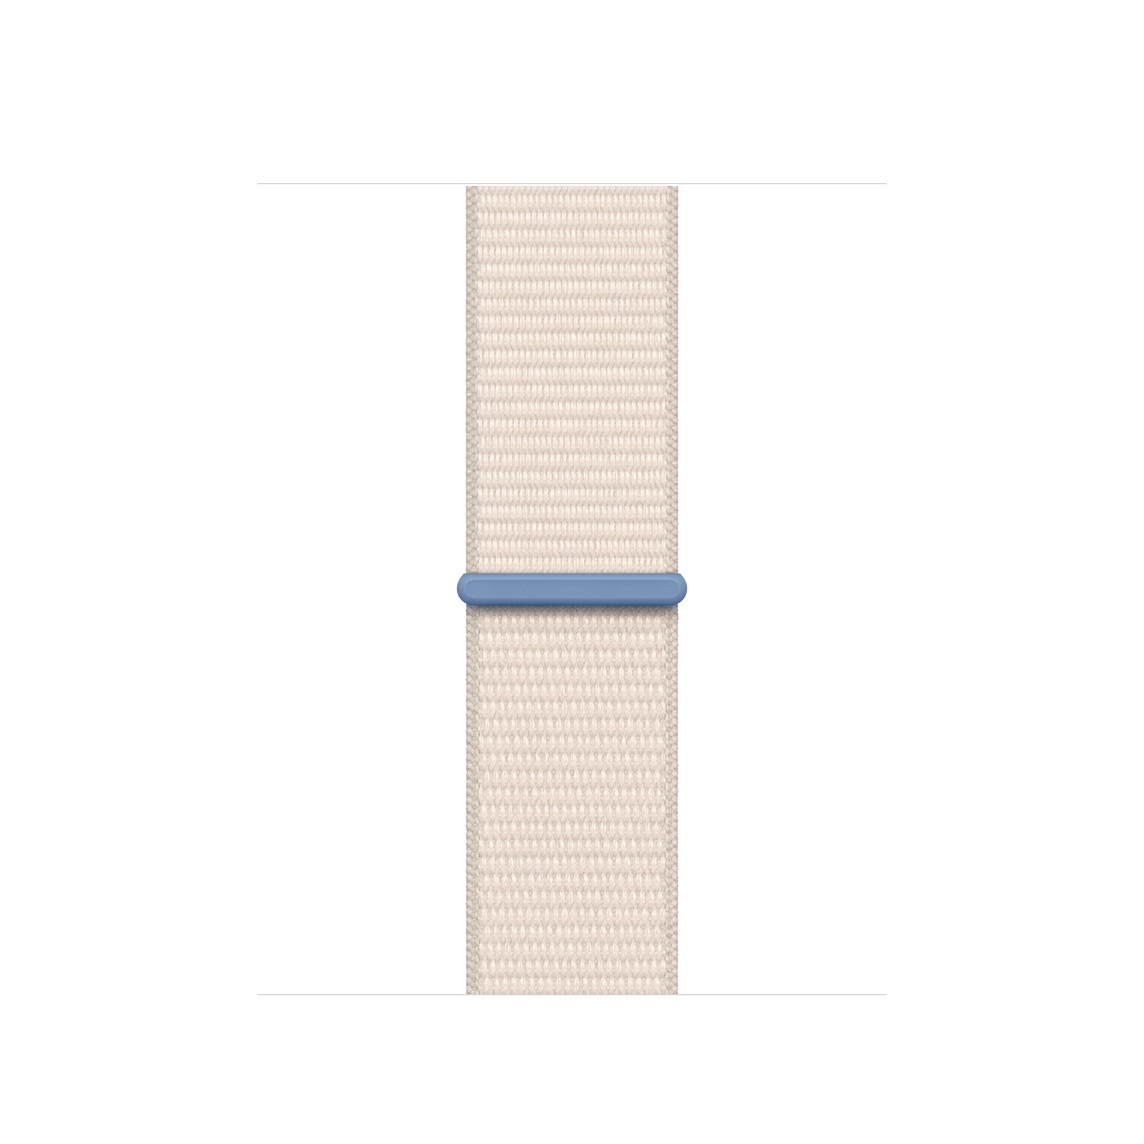 Correa loop deportiva blanco estelar, hecha de nylon tejido color crema, con cierre adhesivo ajustable